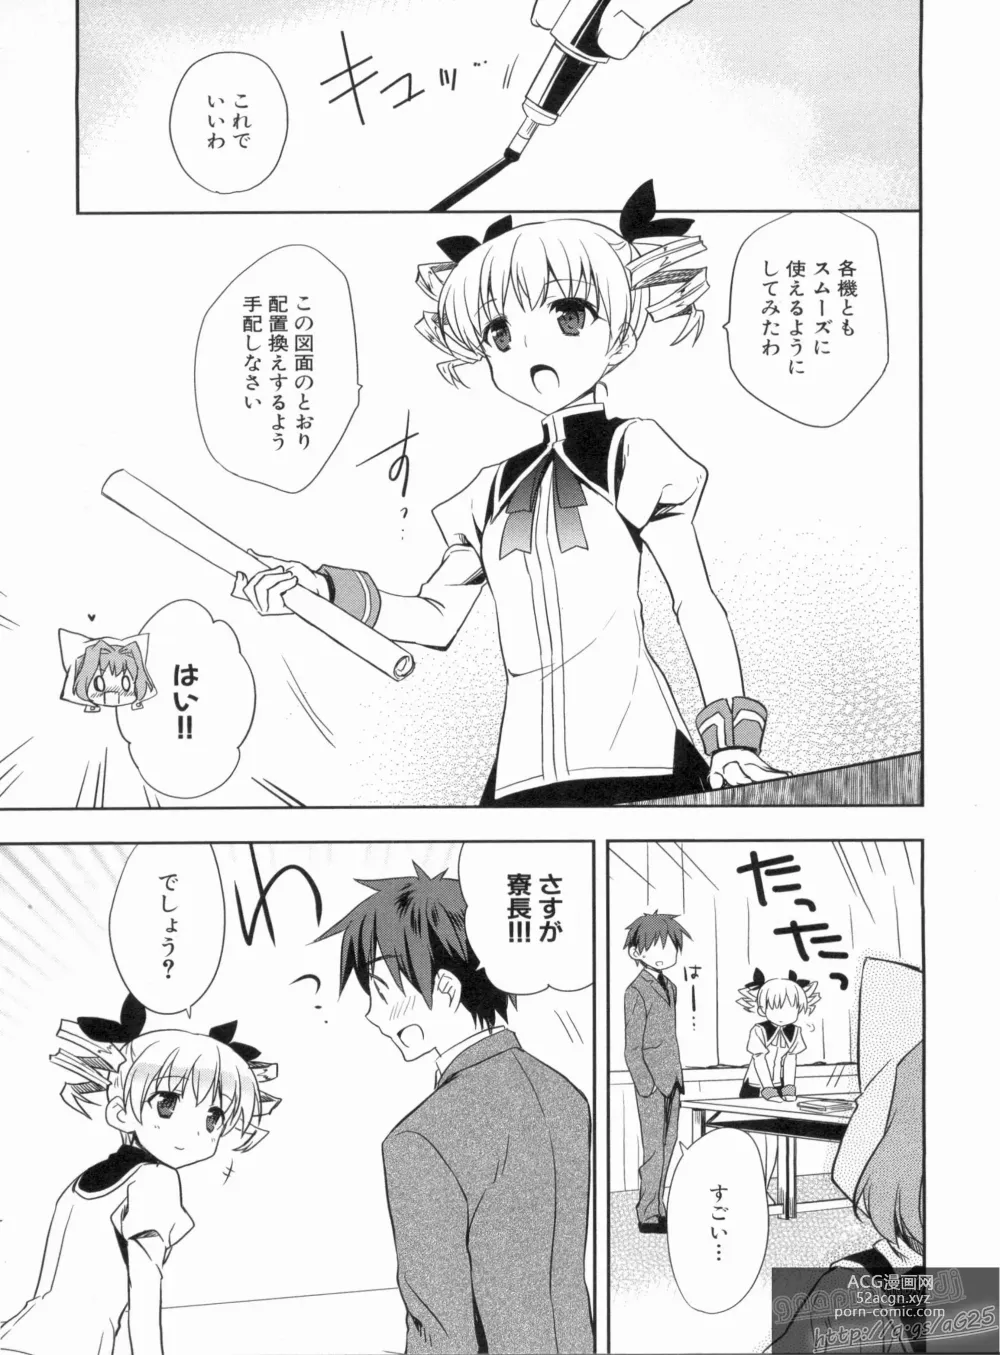 Page 19 of manga Shin Koihime Musou Gaishi Saiten VOL.3